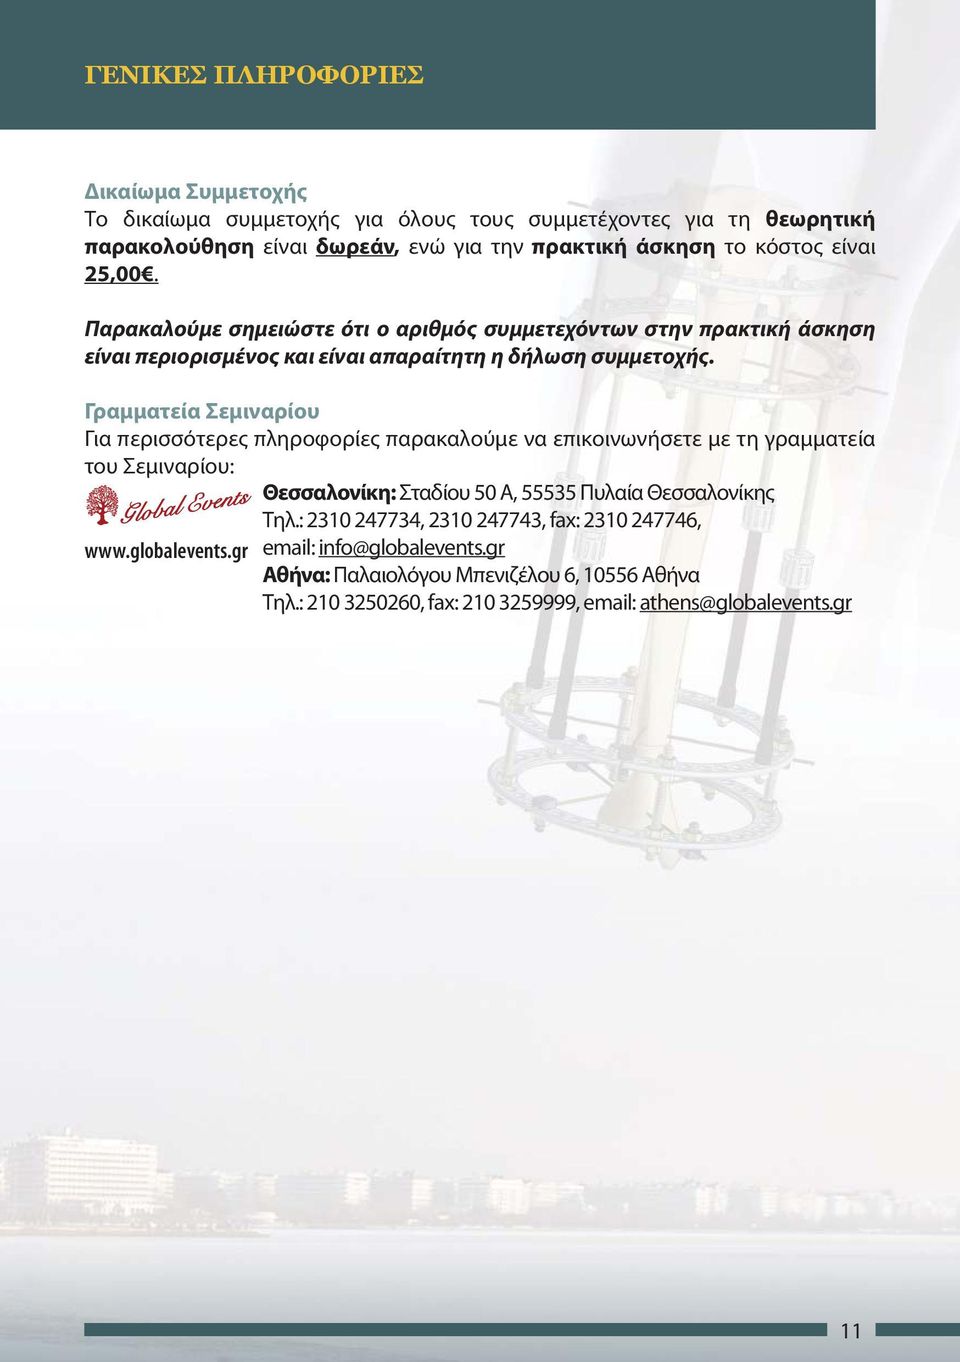 Γραμματεία Σεμιναρίου Για περισσότερες πληροφορίες παρακαλούμε να επικοινωνήσετε με τη γραμματεία του Σεμιναρίου: Θεσσαλονίκη: Σταδίου 50 Α, 55535 Πυλαία Θεσσαλονίκης Tηλ.